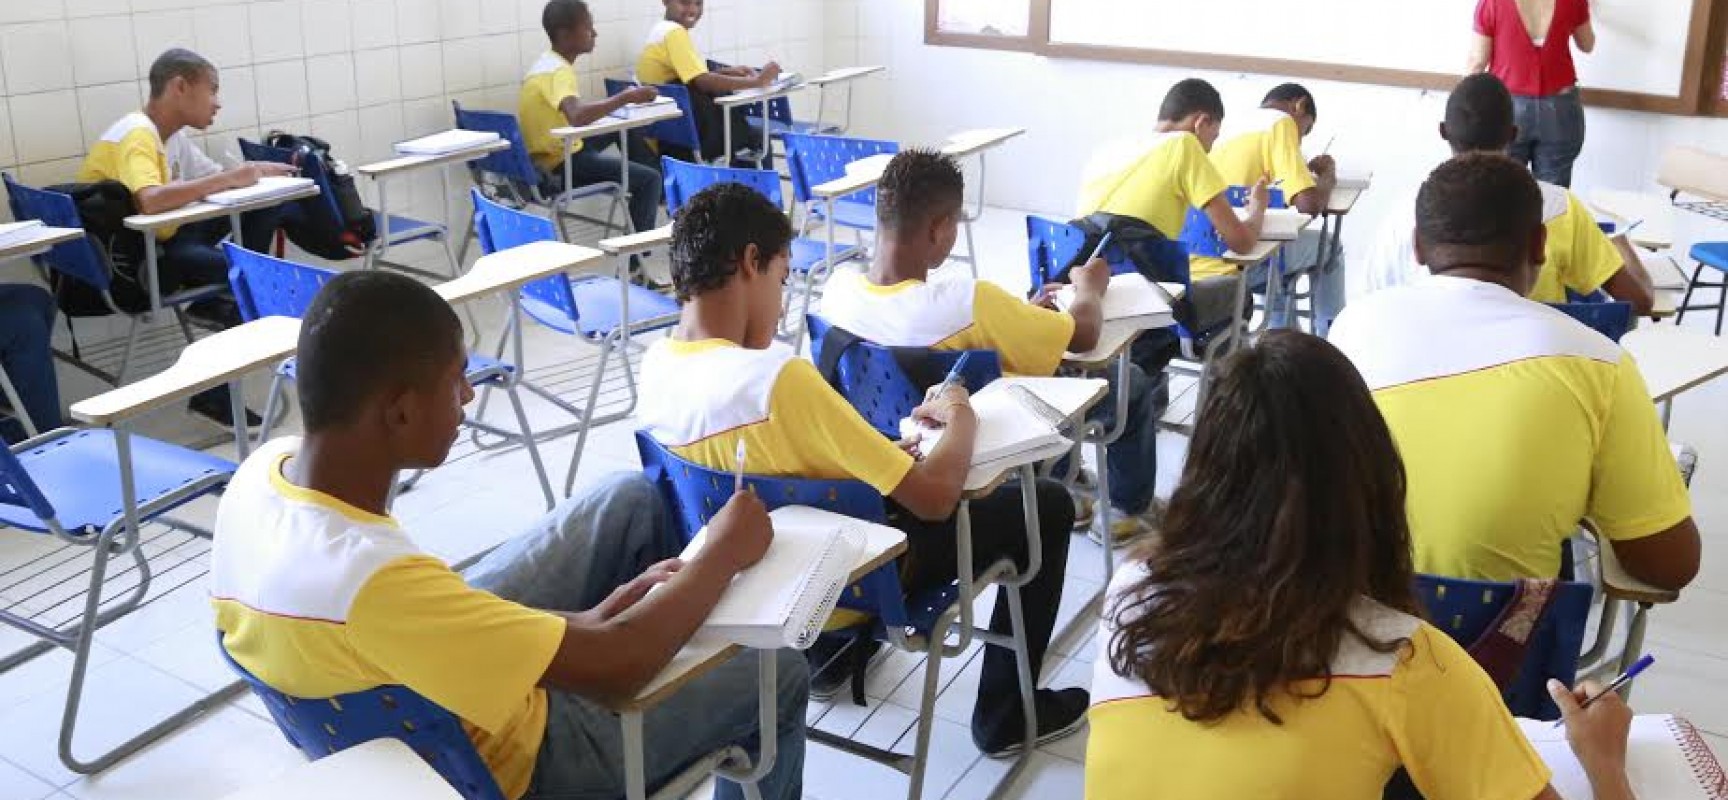 Prefeitura de Ilhéus lança edital para contratar professores e intérpretes temporários